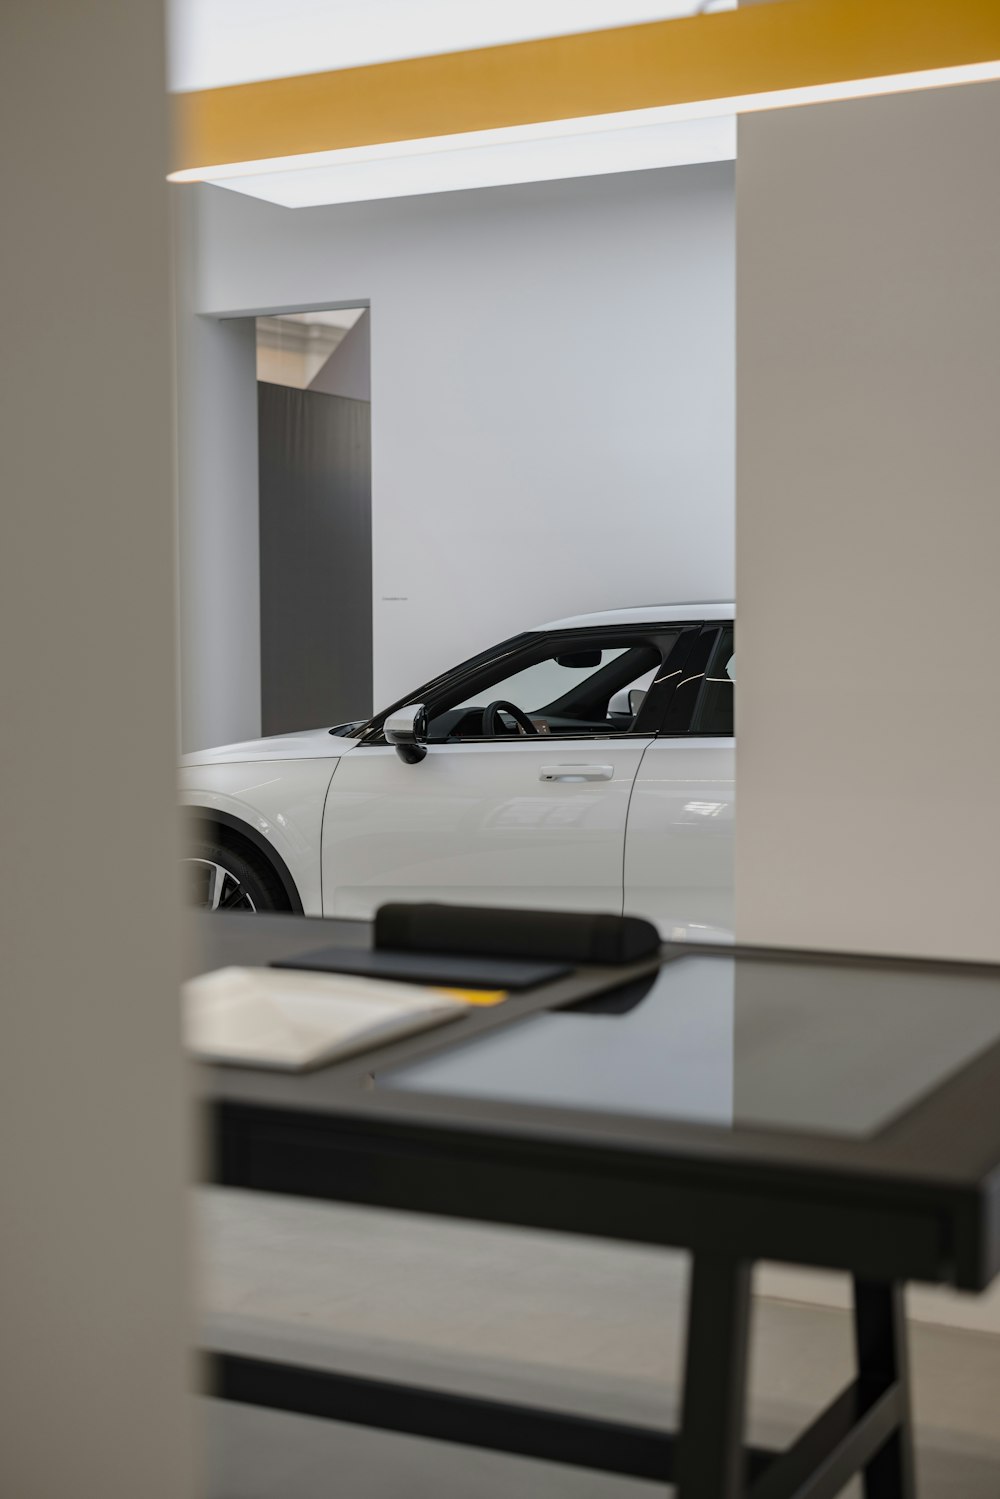 Une voiture blanche est garée dans une salle d’exposition